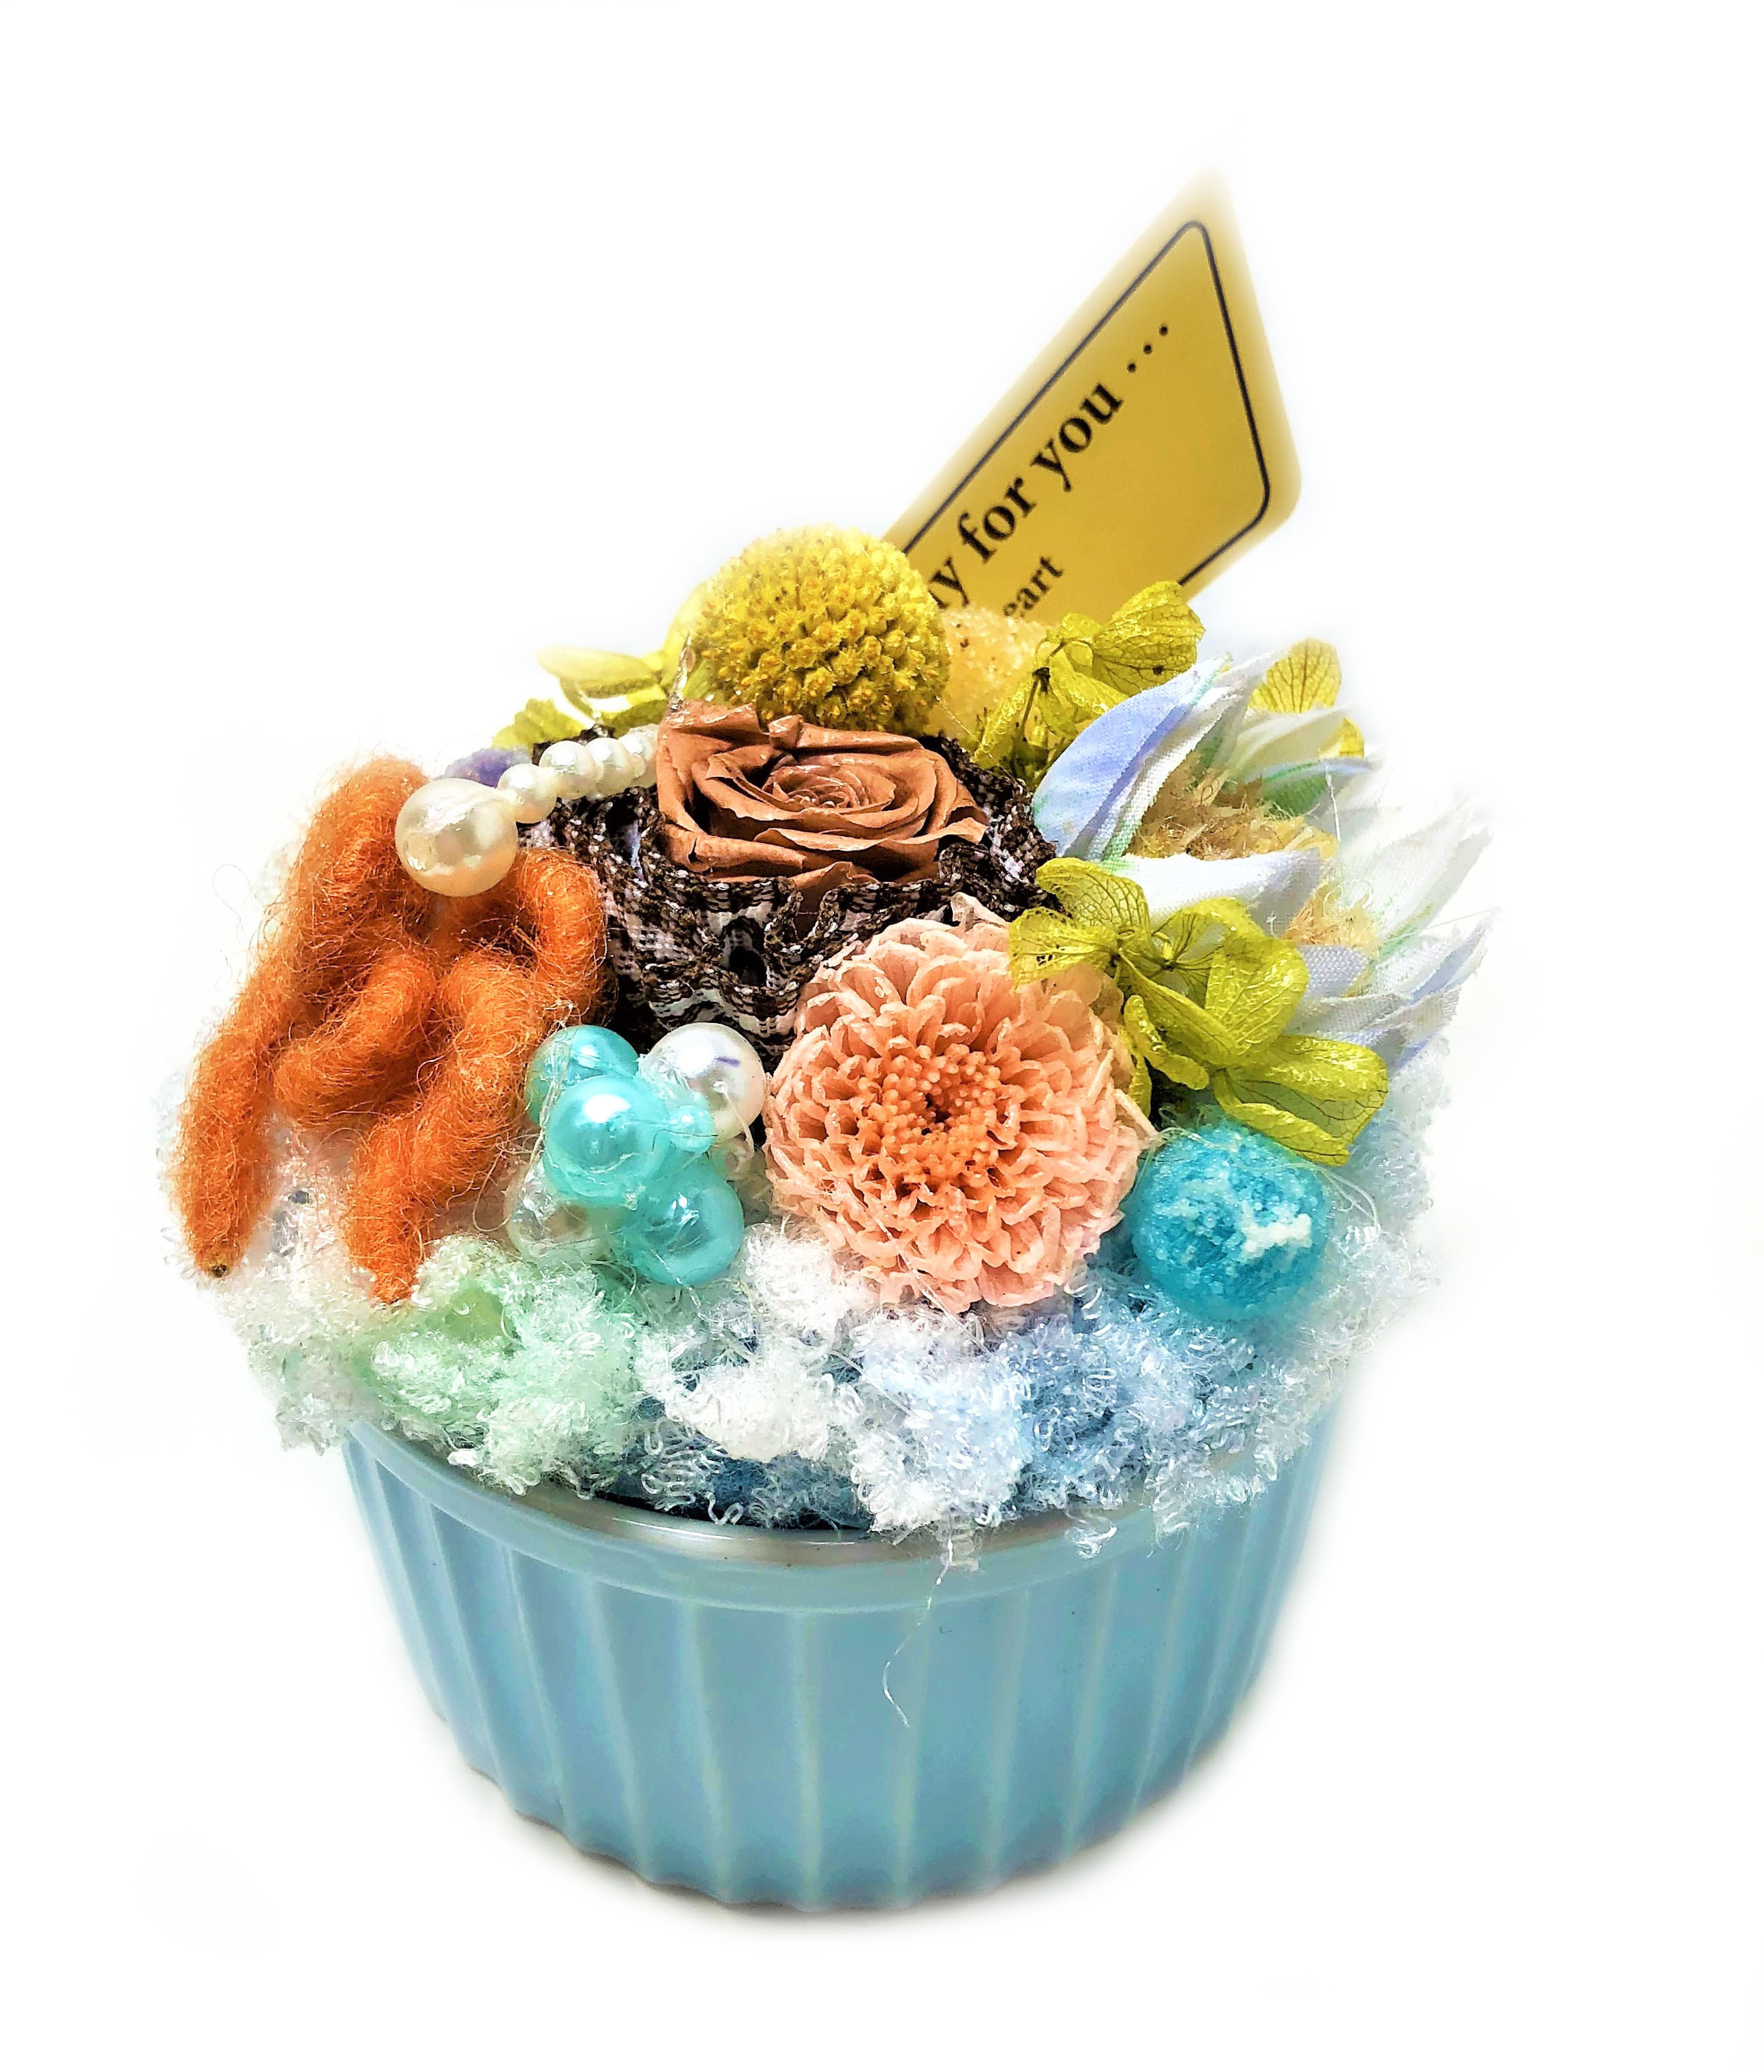 カップケーキ フラワーケーキ プリザーブドフラワー チョコミント Cupc ｕ 花と雑貨 花千手 Hanasenju